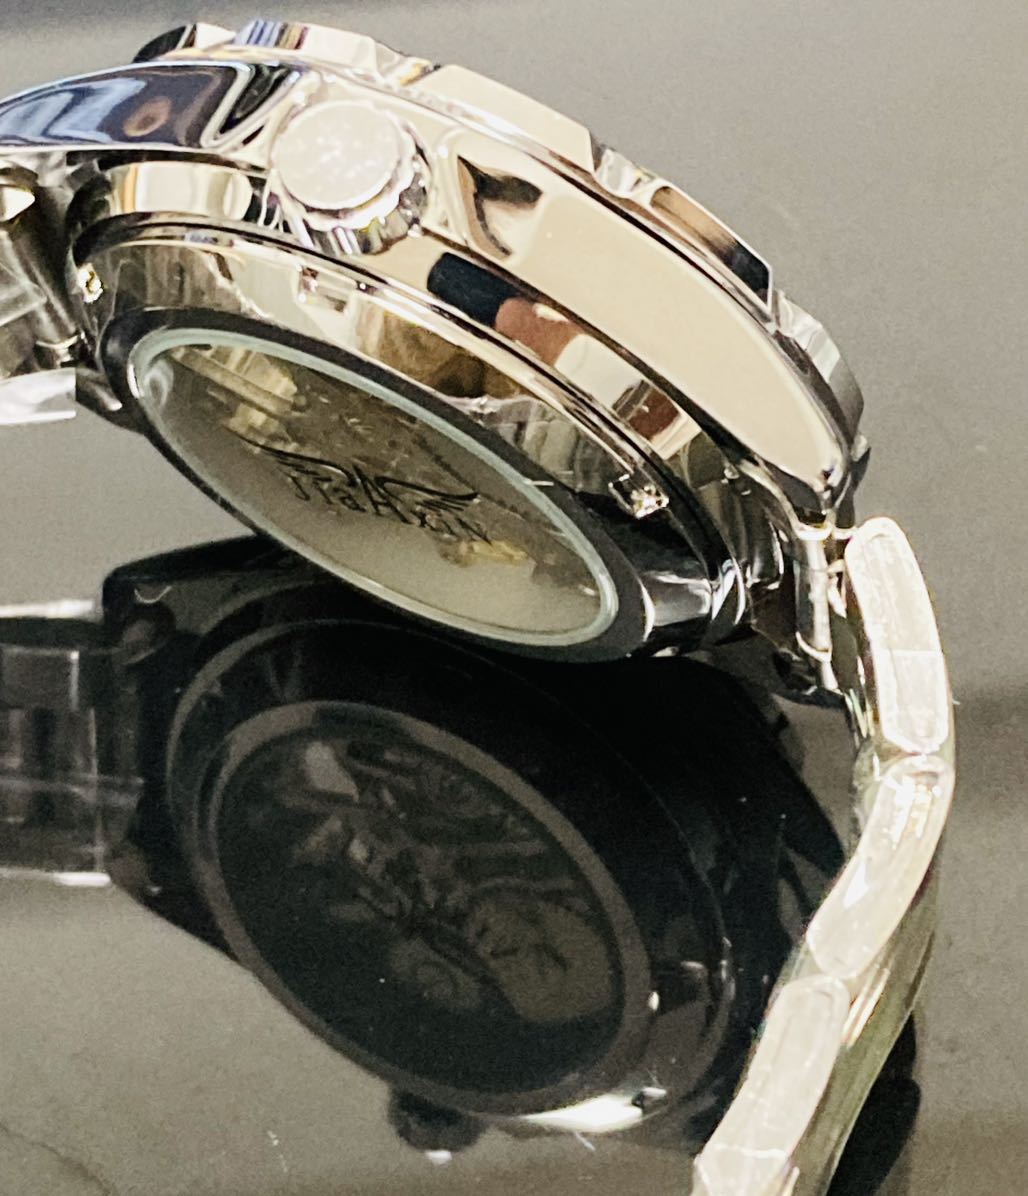  большой . sho flat брак распродажа мужские наручные часы самозаводящиеся часы механический завод водонепроницаемый наручные часы оправа передвижной кварц костюм браслет серфинг 1815p